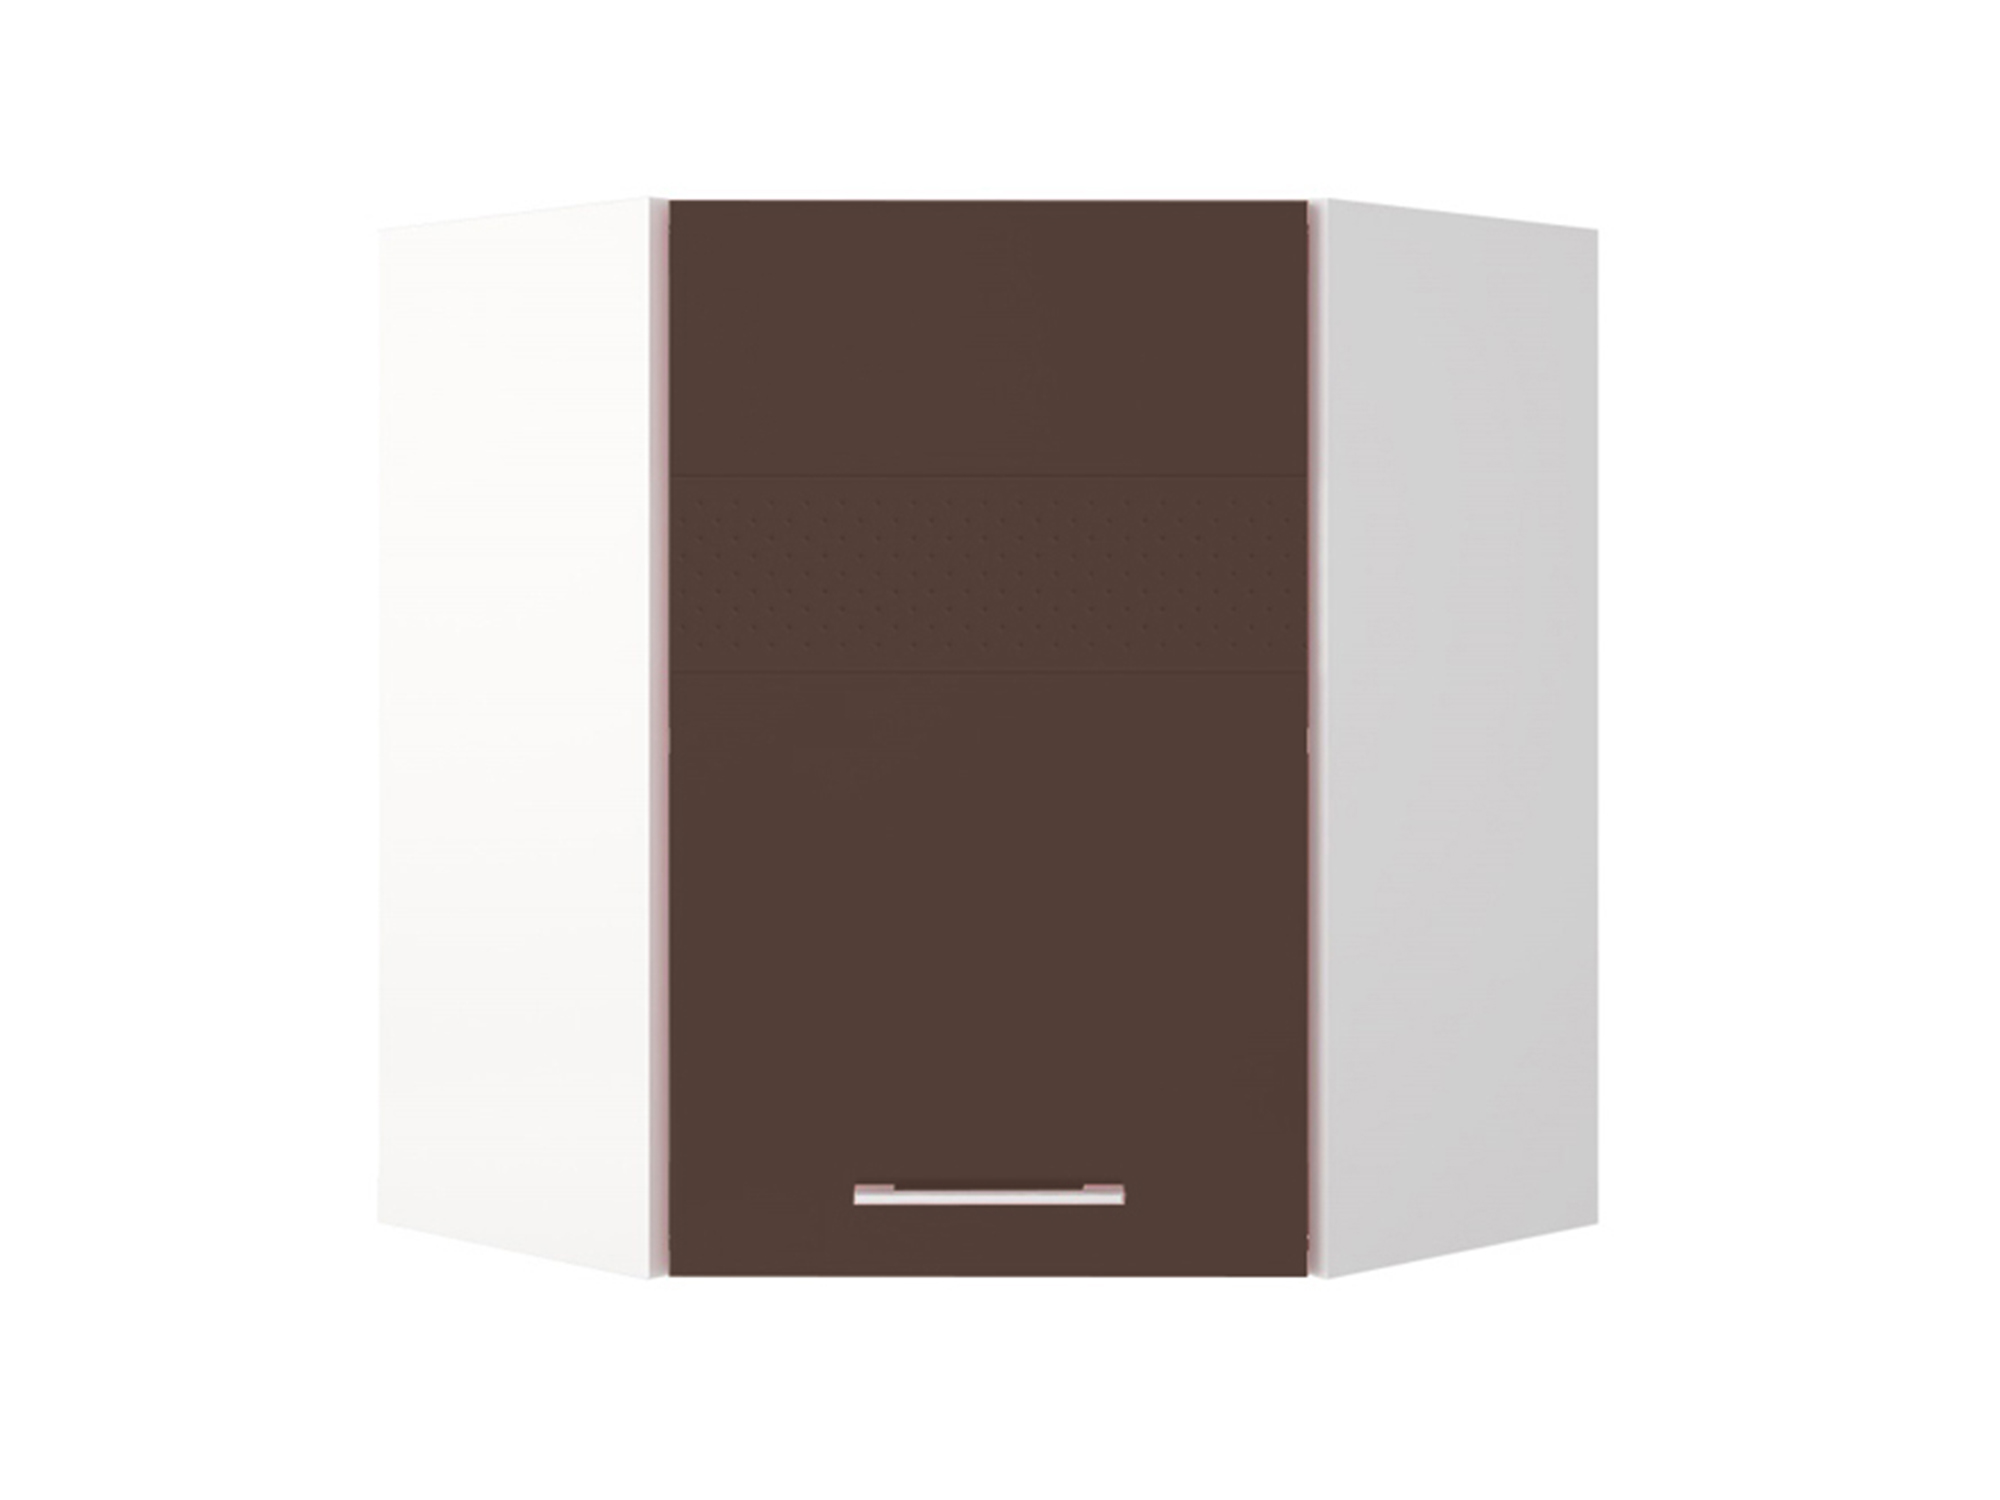 Шкаф навесной угловой Люкс Шоколад глянец, , Коричневый темный, Белый, МДФ, ПВХ, ЛДСП шкаф навесной 80 люкс шоколад глянец коричневый темный белый мдф пвх лдсп